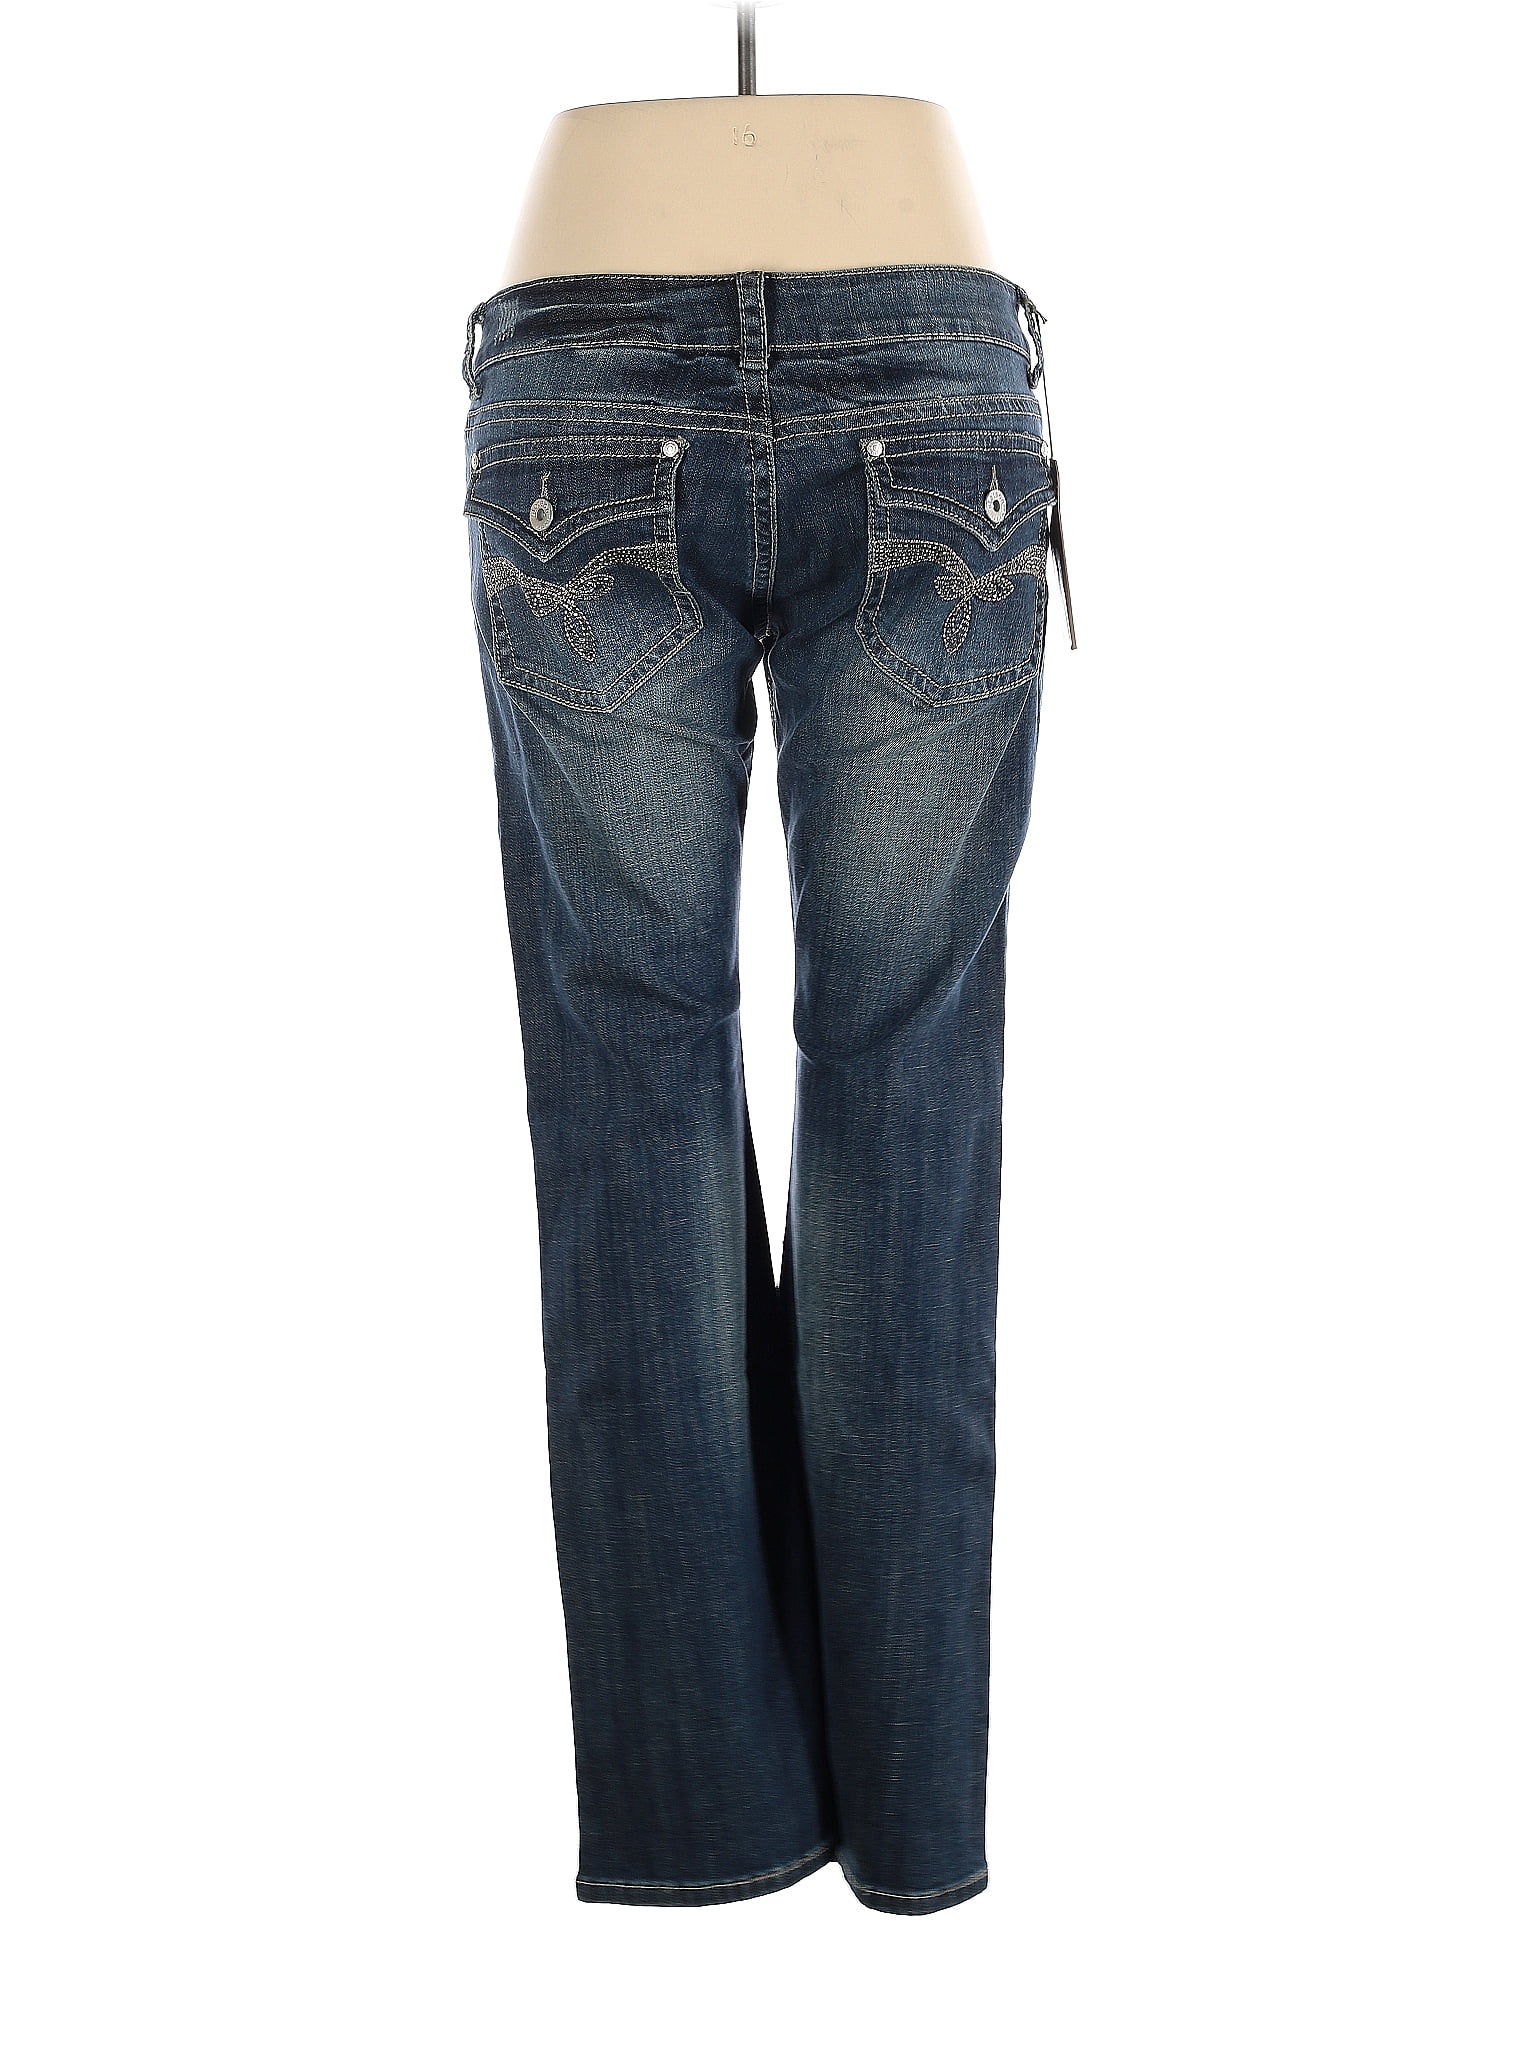 GAIAM Blue Active Pants Size XL - 47% off